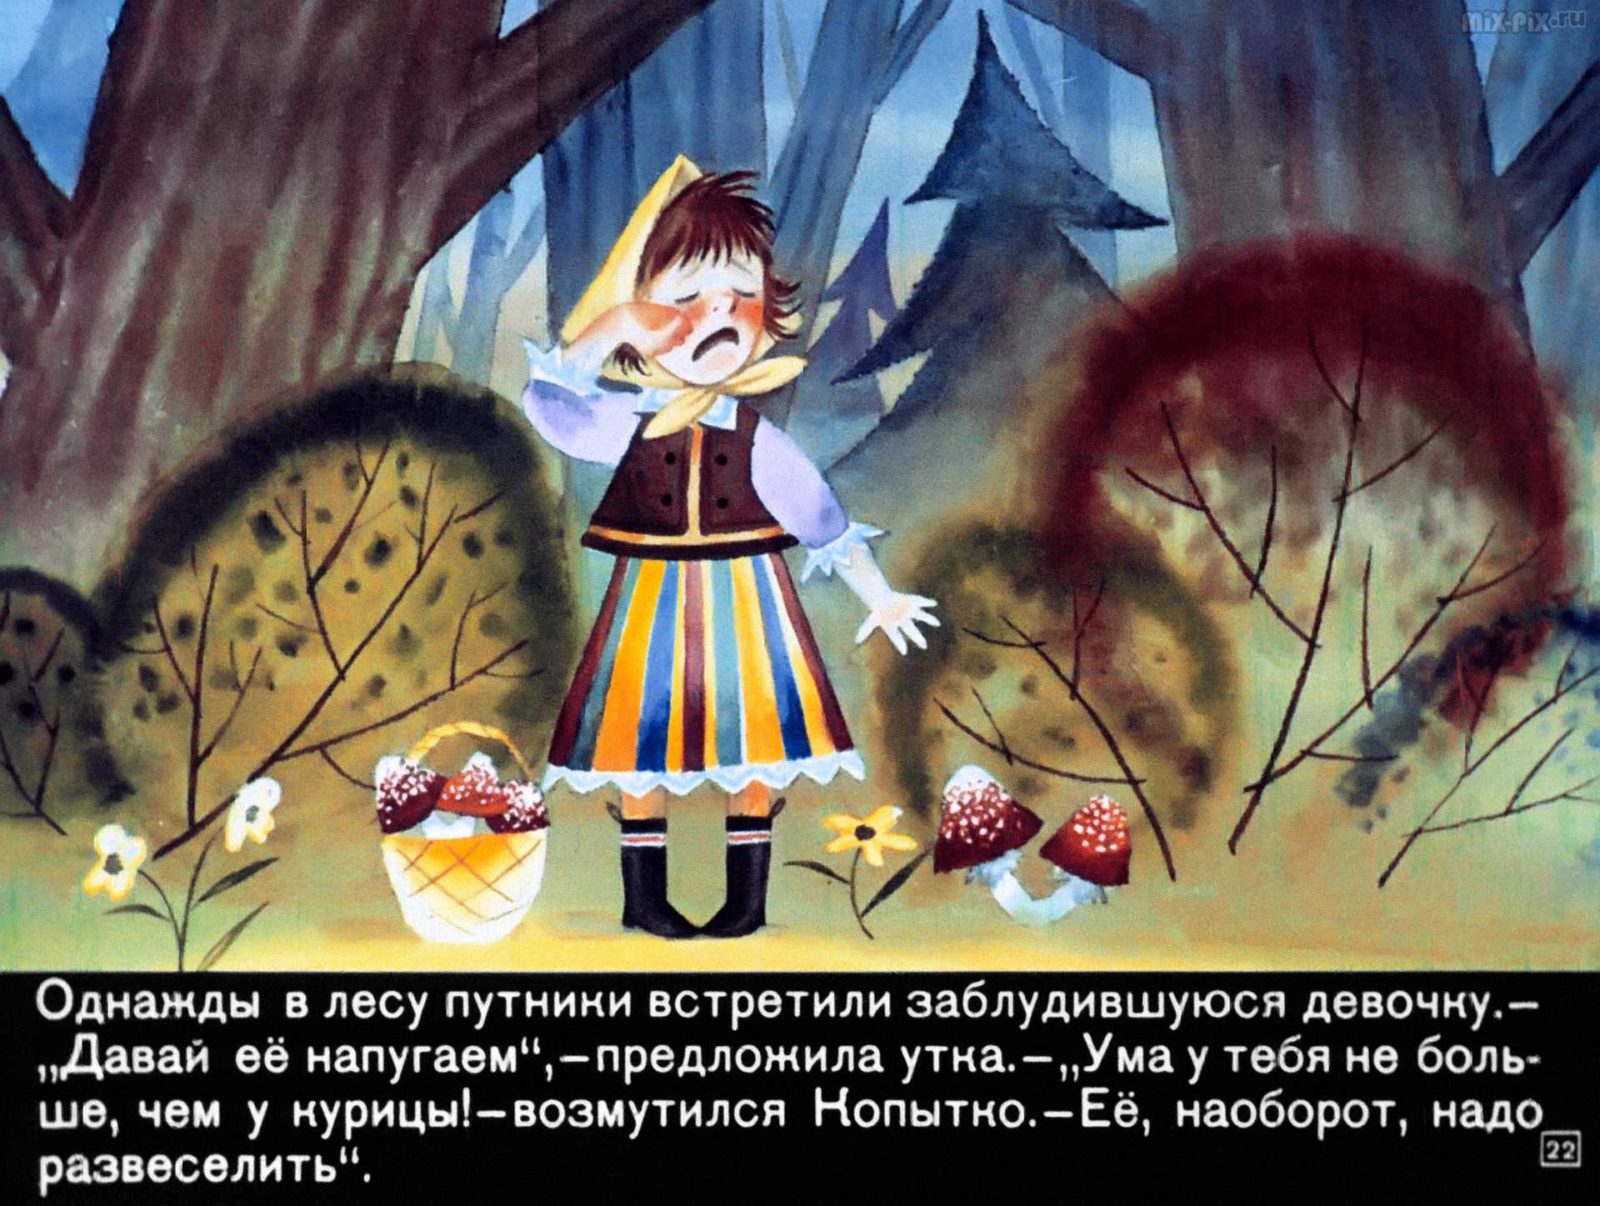 Сапожник Копытко и утка Кря (1972) 32